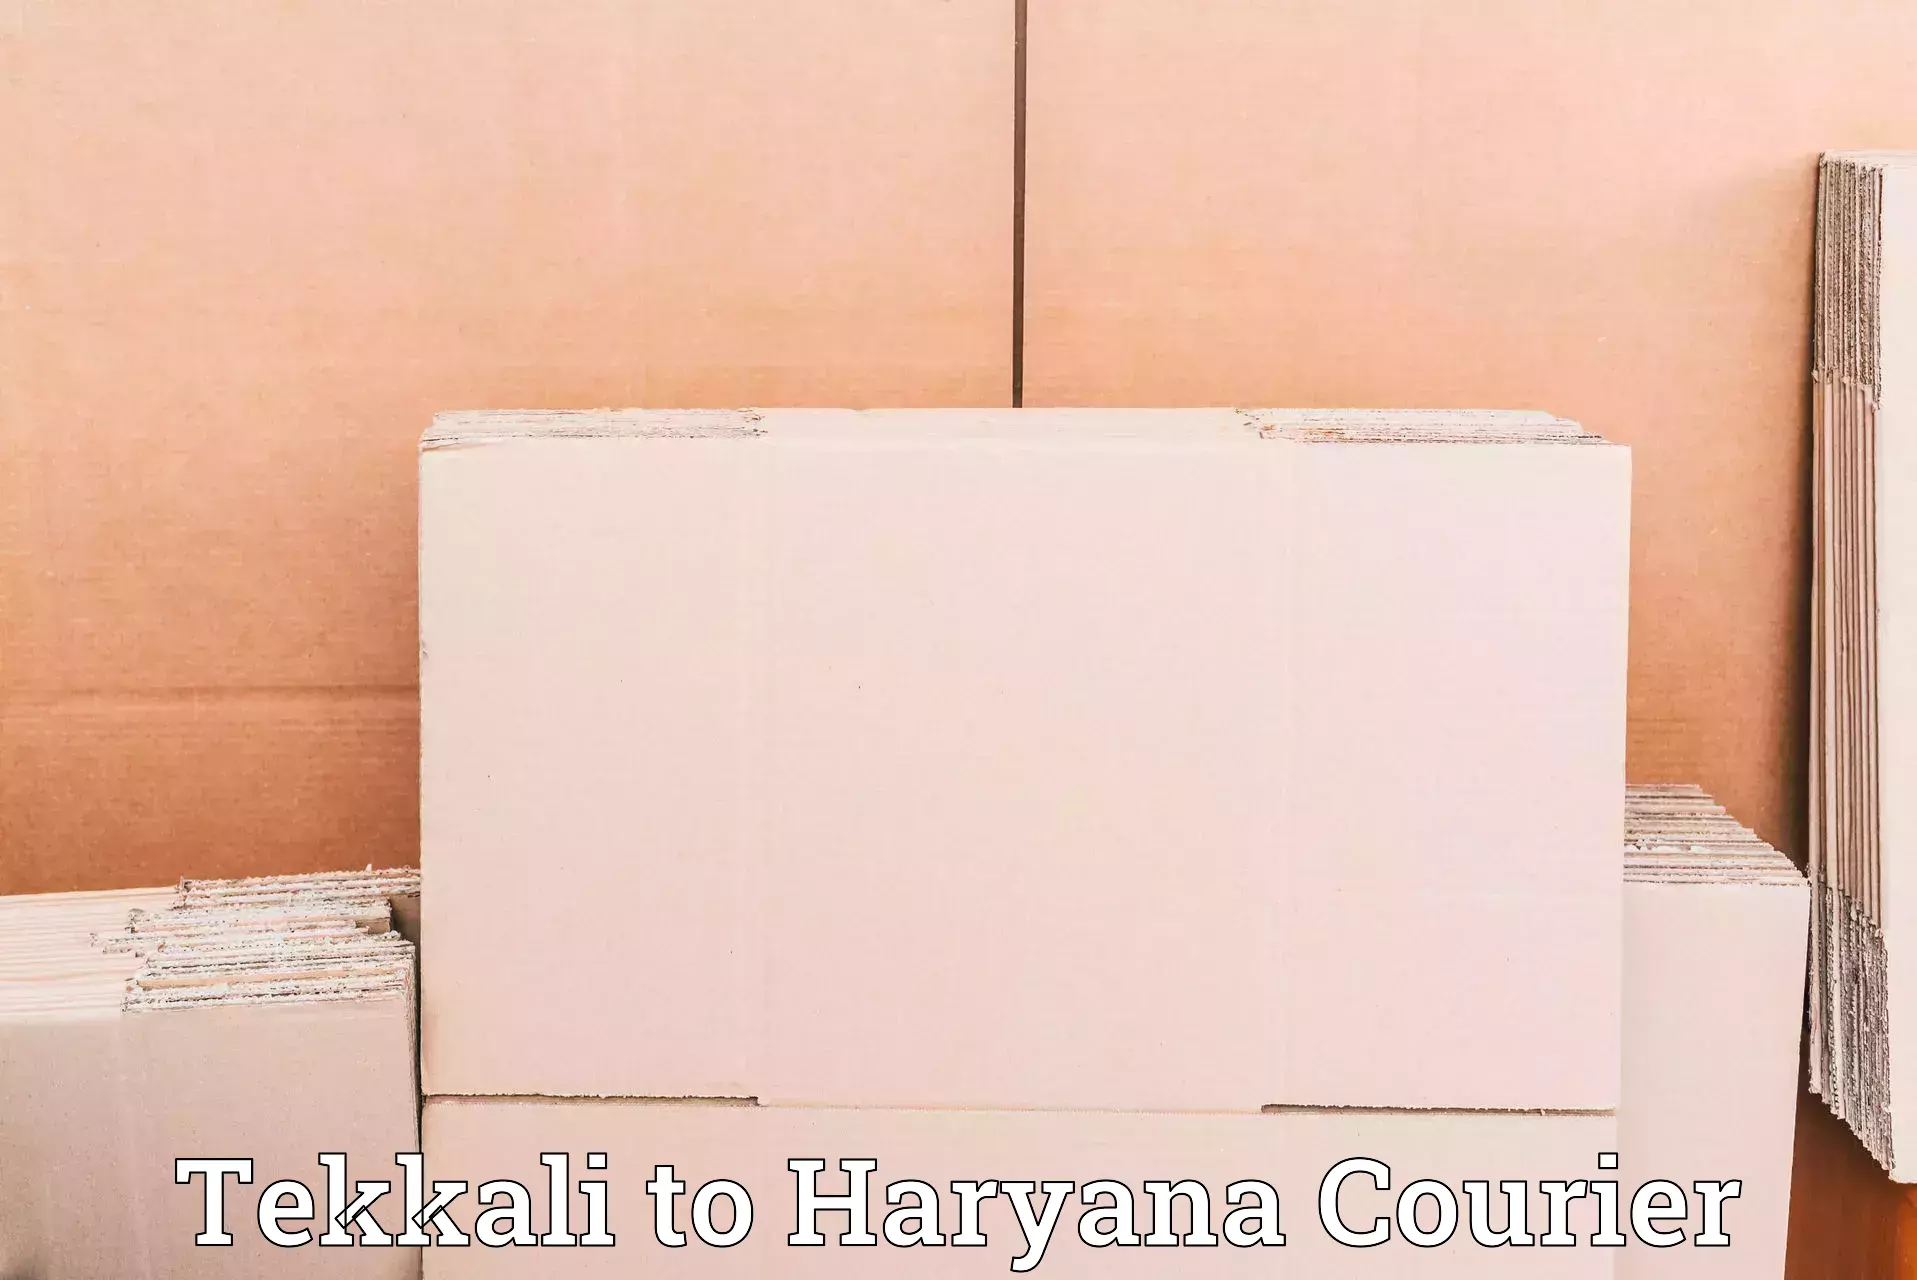 Reliable logistics providers Tekkali to Gurgaon